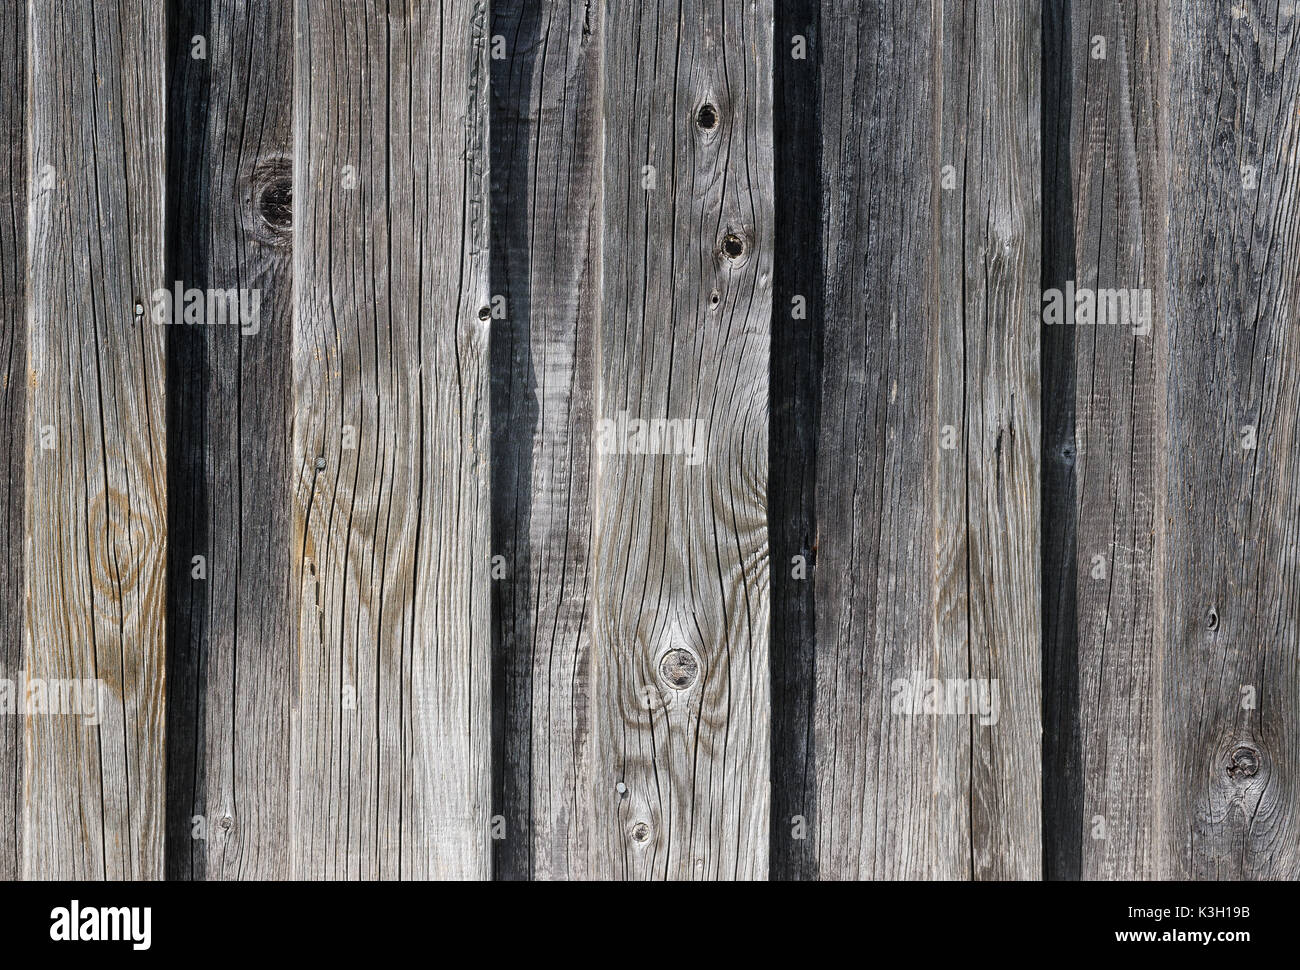 Weathered vecchia parete in legno dettaglio. Semplici schede grigio con knotholes e grana grossa inchiodato insieme. All'esterno. Gli sfondi. Foto. Foto Stock